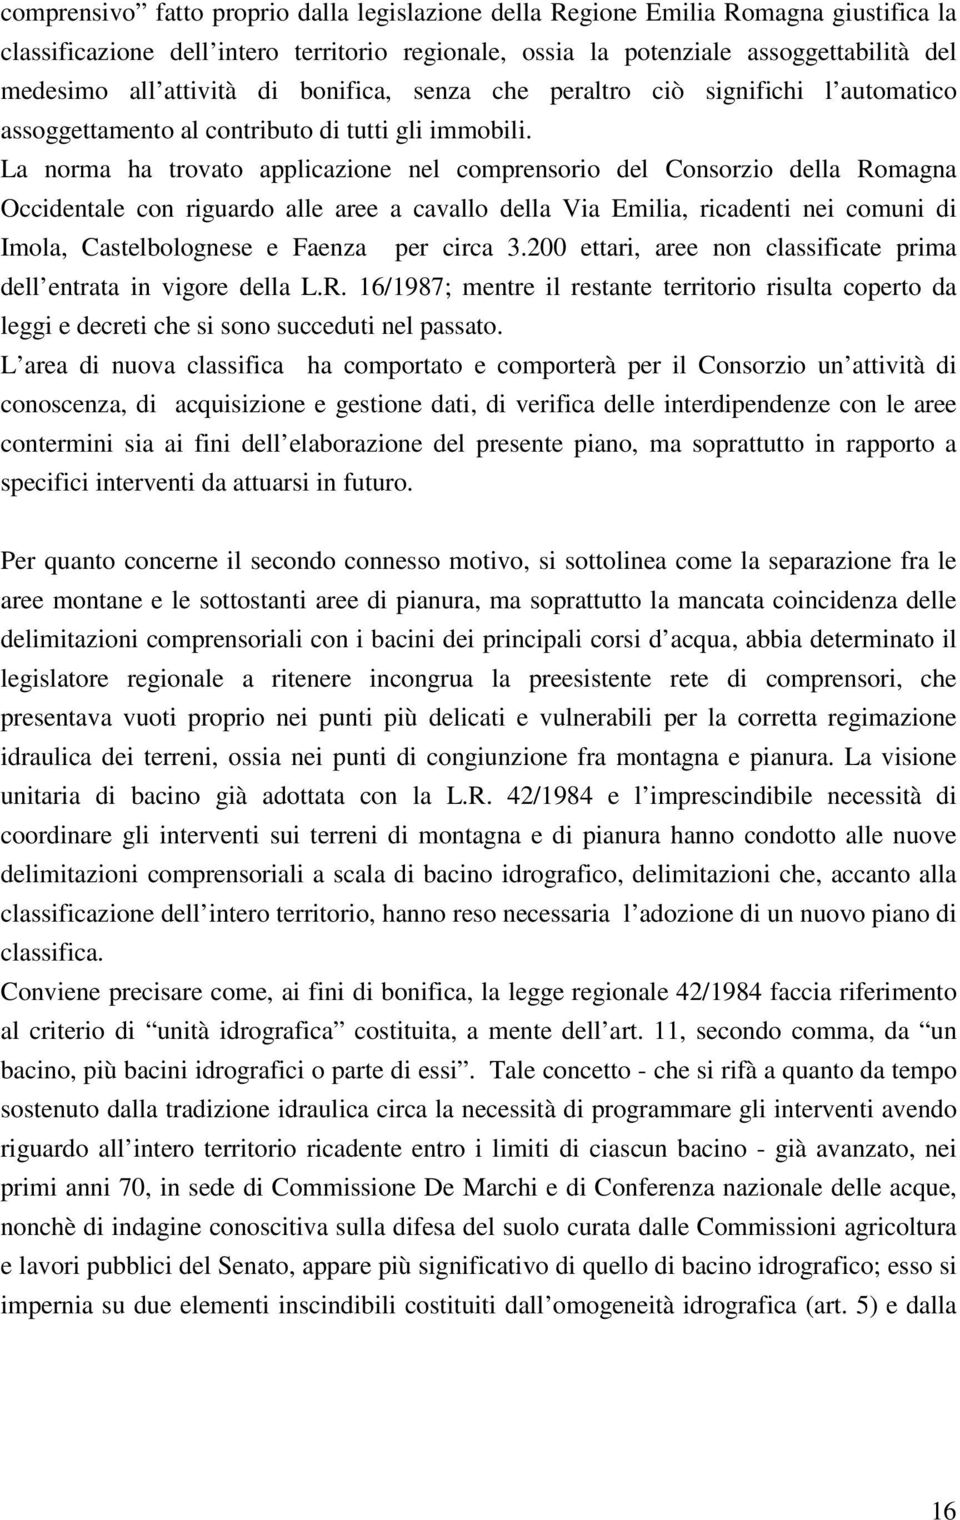 La norma ha trovato applicazione nel comprensorio del Consorzio della Romagna Occidentale con riguardo alle aree a cavallo della Via Emilia, ricadenti nei comuni di Imola, Castelbolognese e Faenza